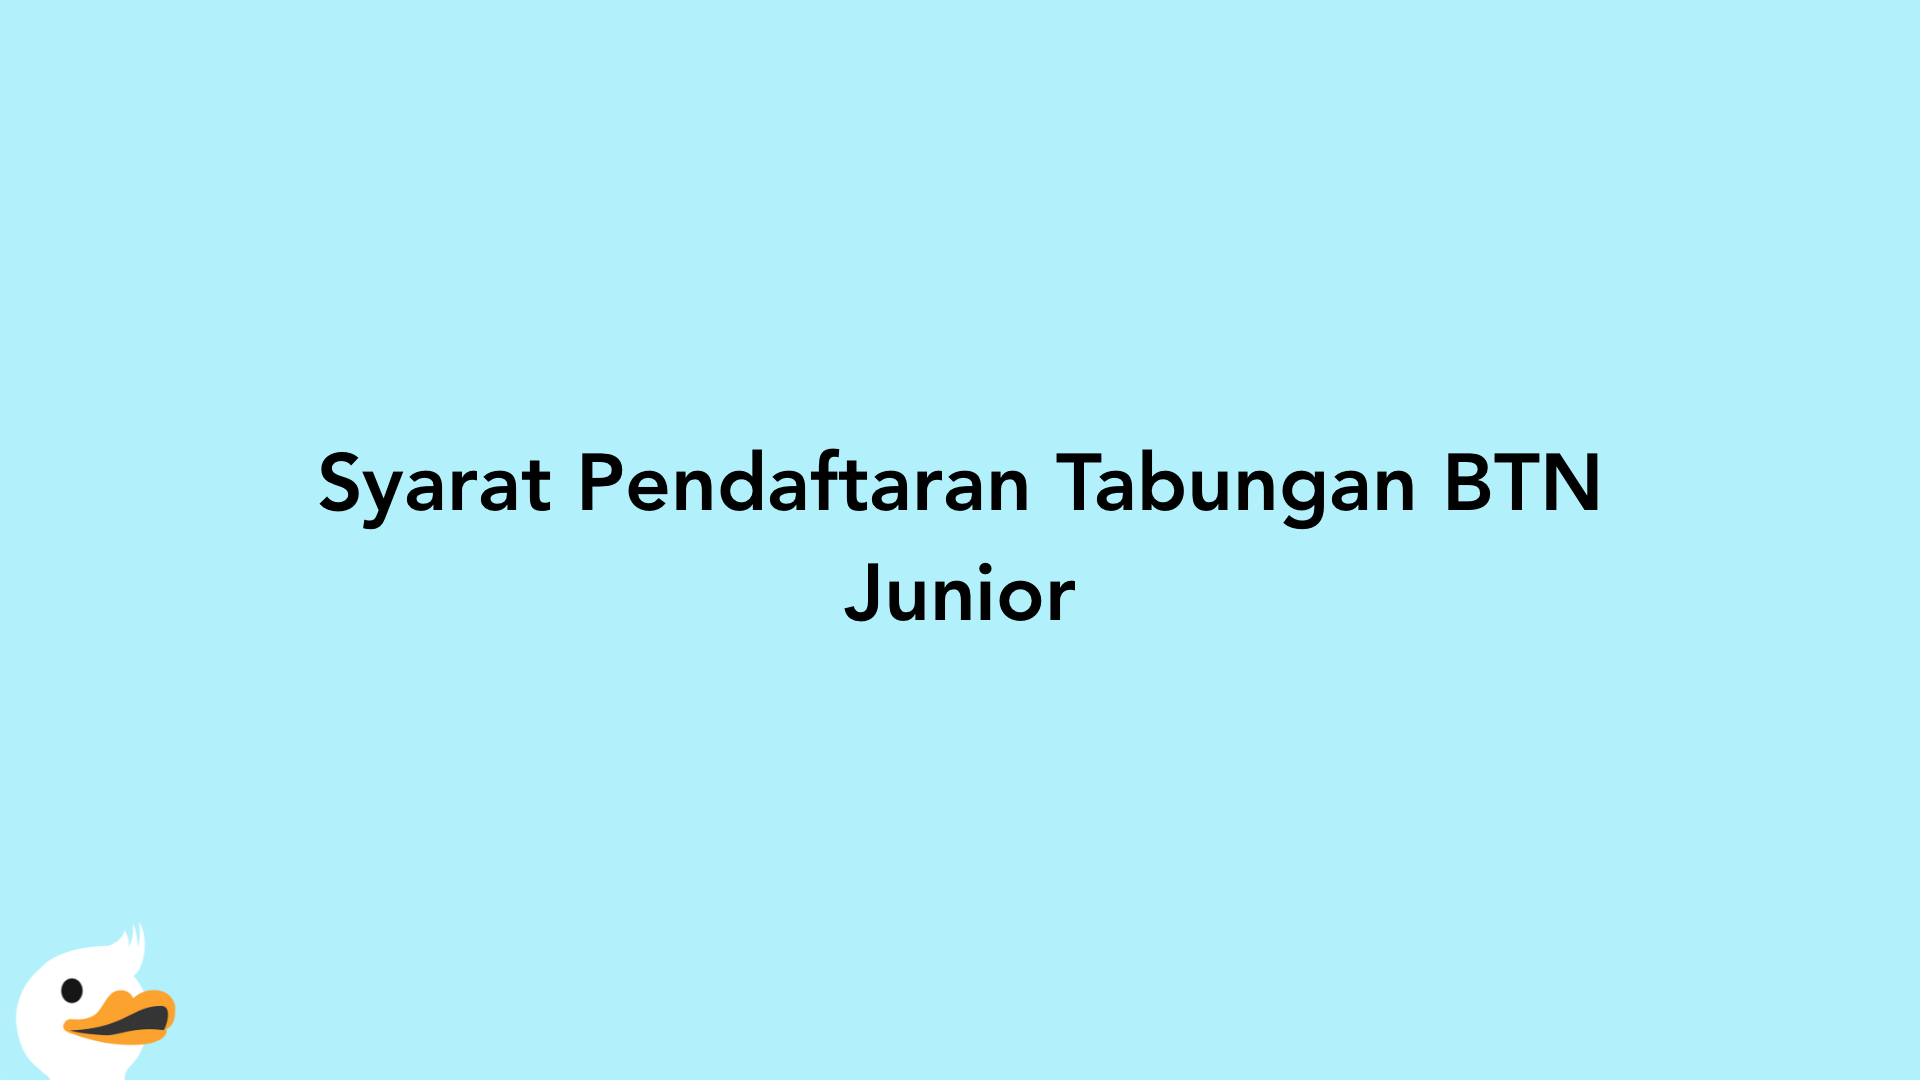 Syarat Pendaftaran Tabungan BTN Junior